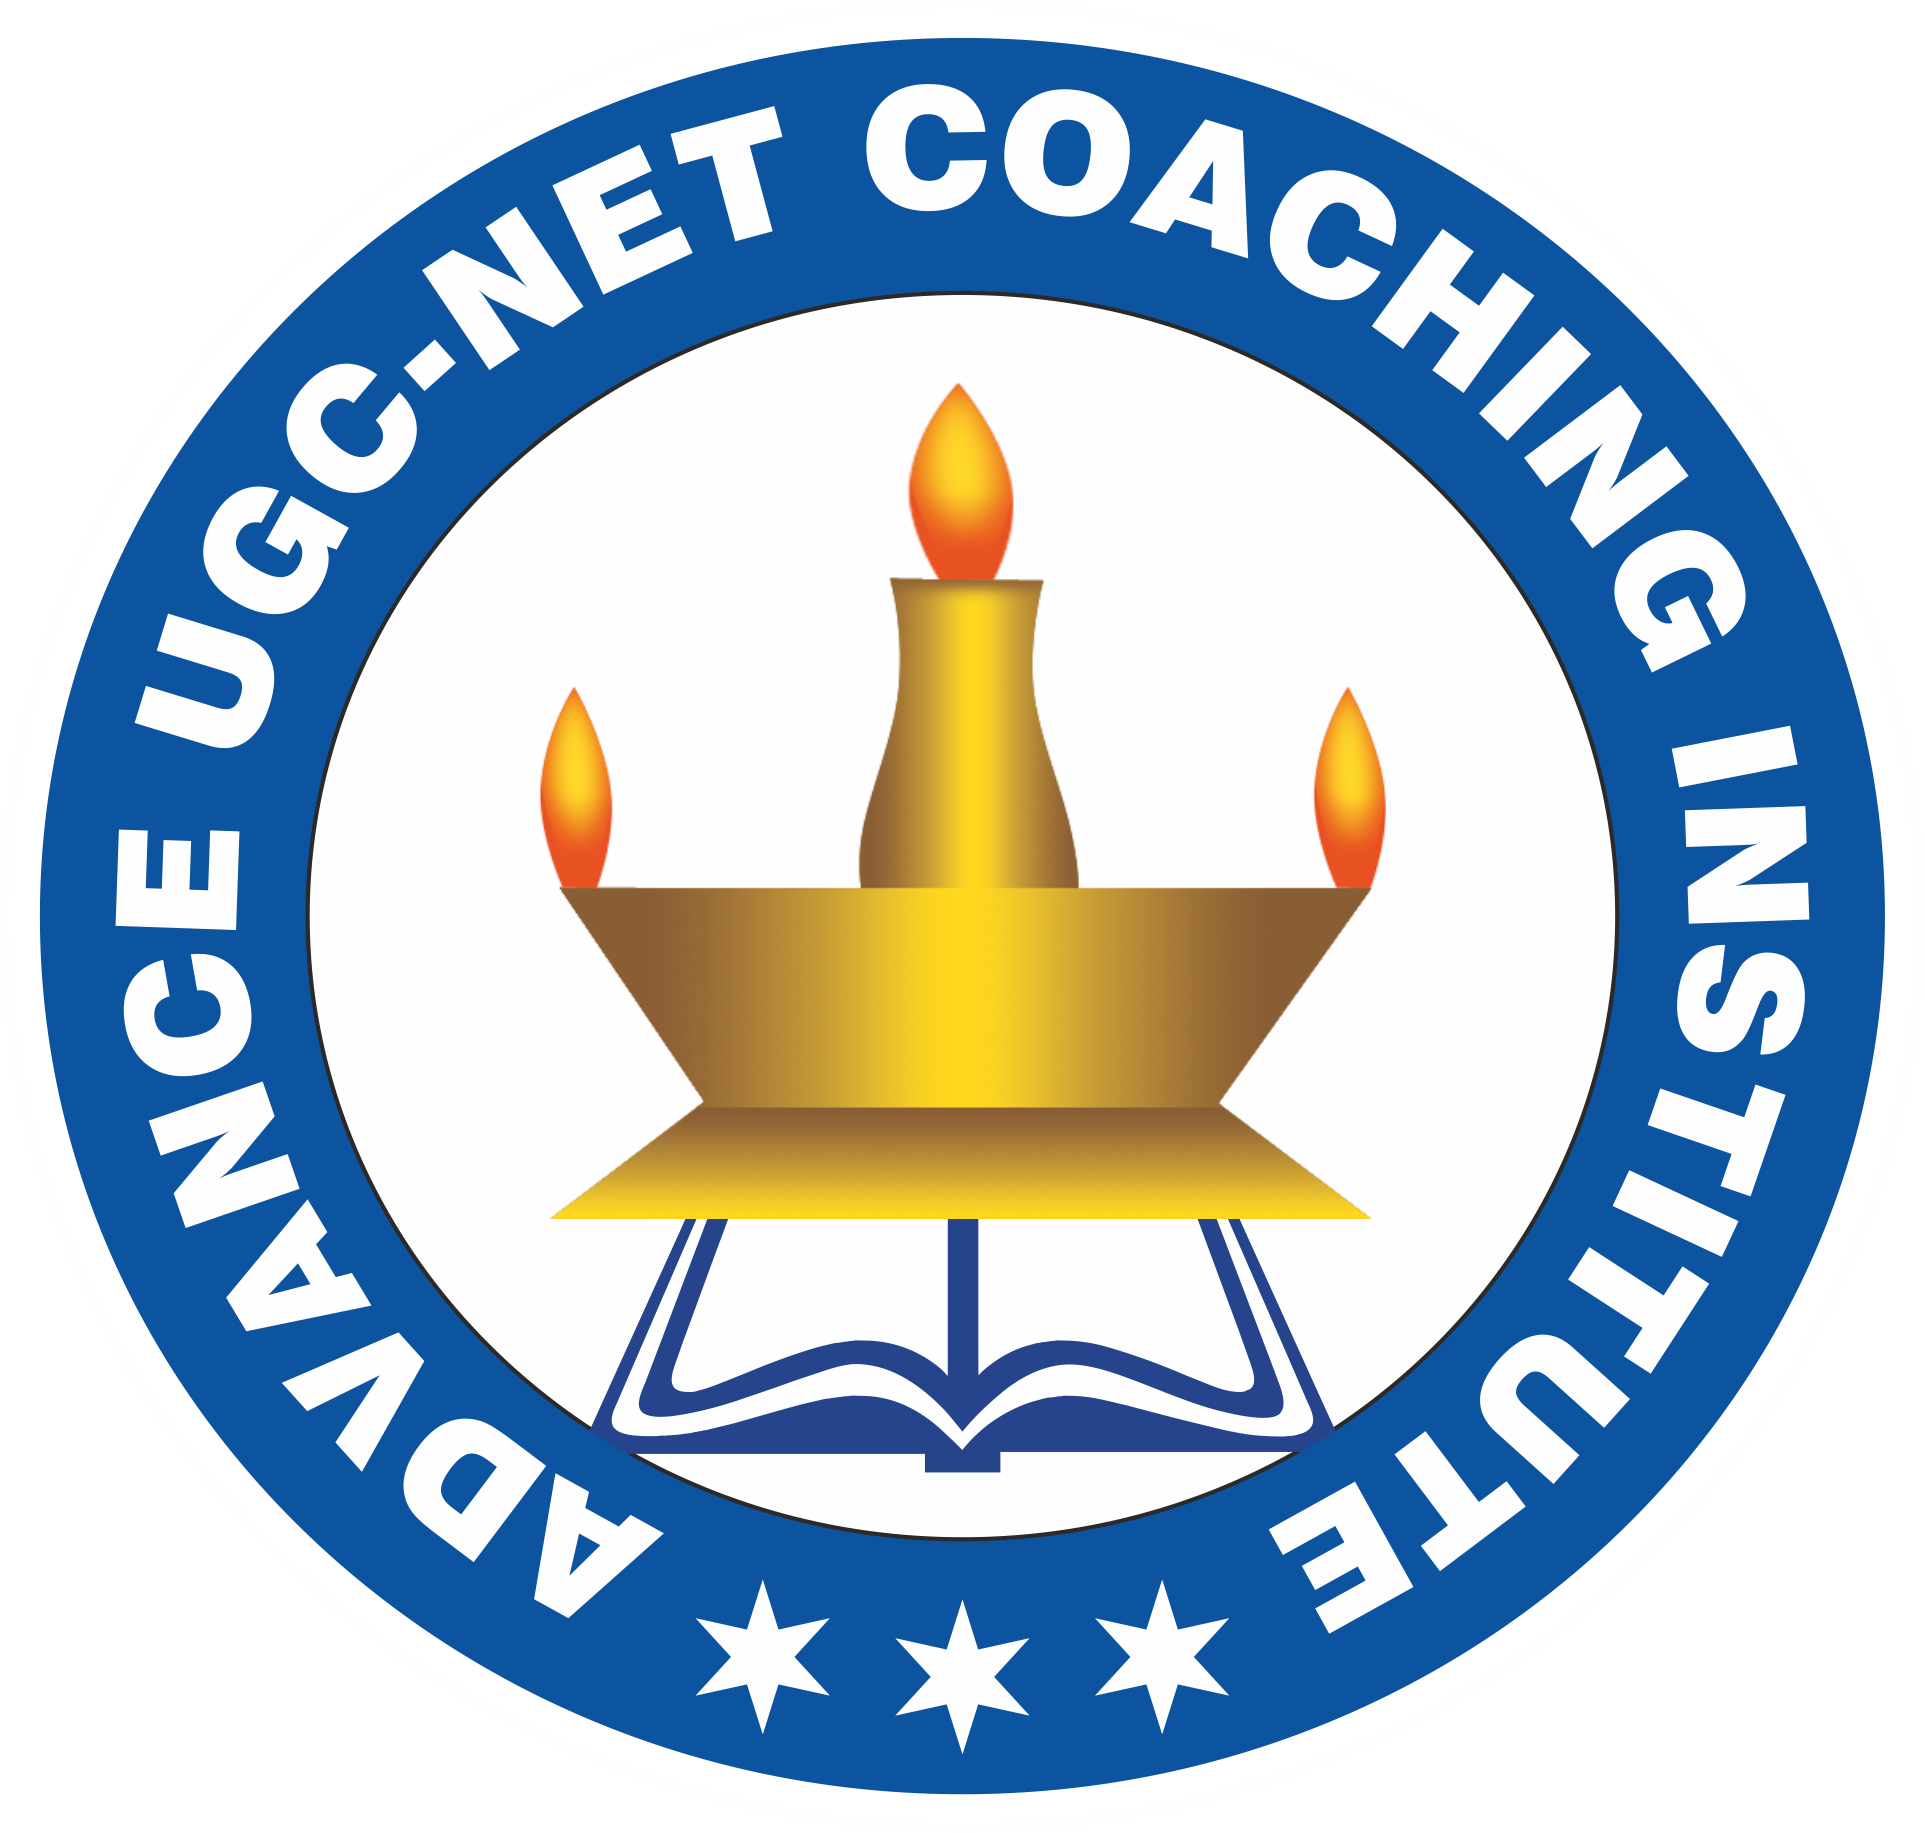 ugc net coaching center in delhi, Ugc Net Coaching institute in laxmi nagar